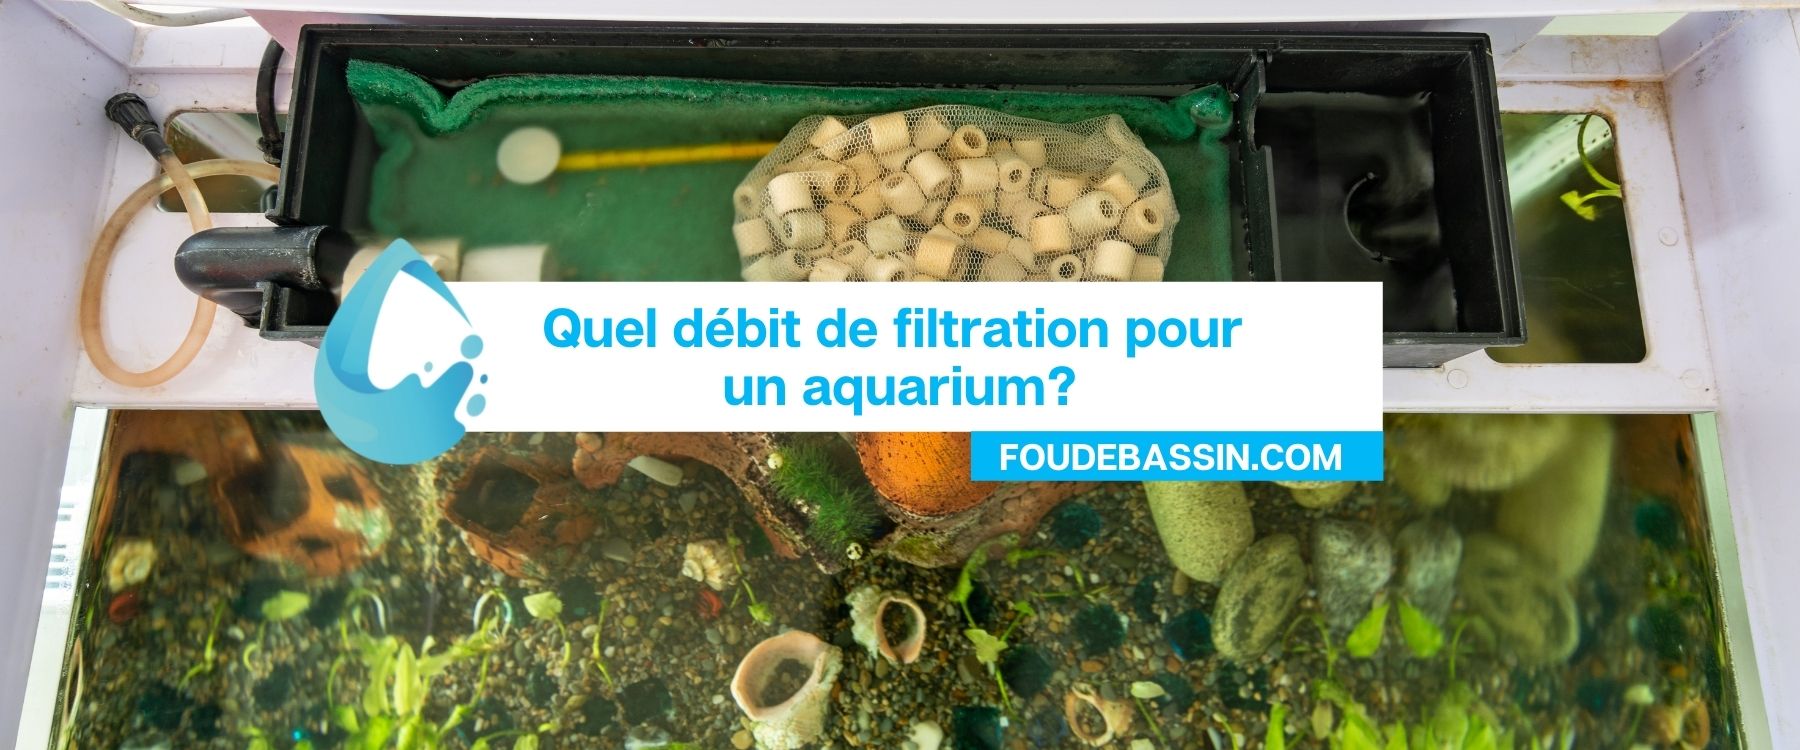 Quel débit de filtration pour un aquarium?